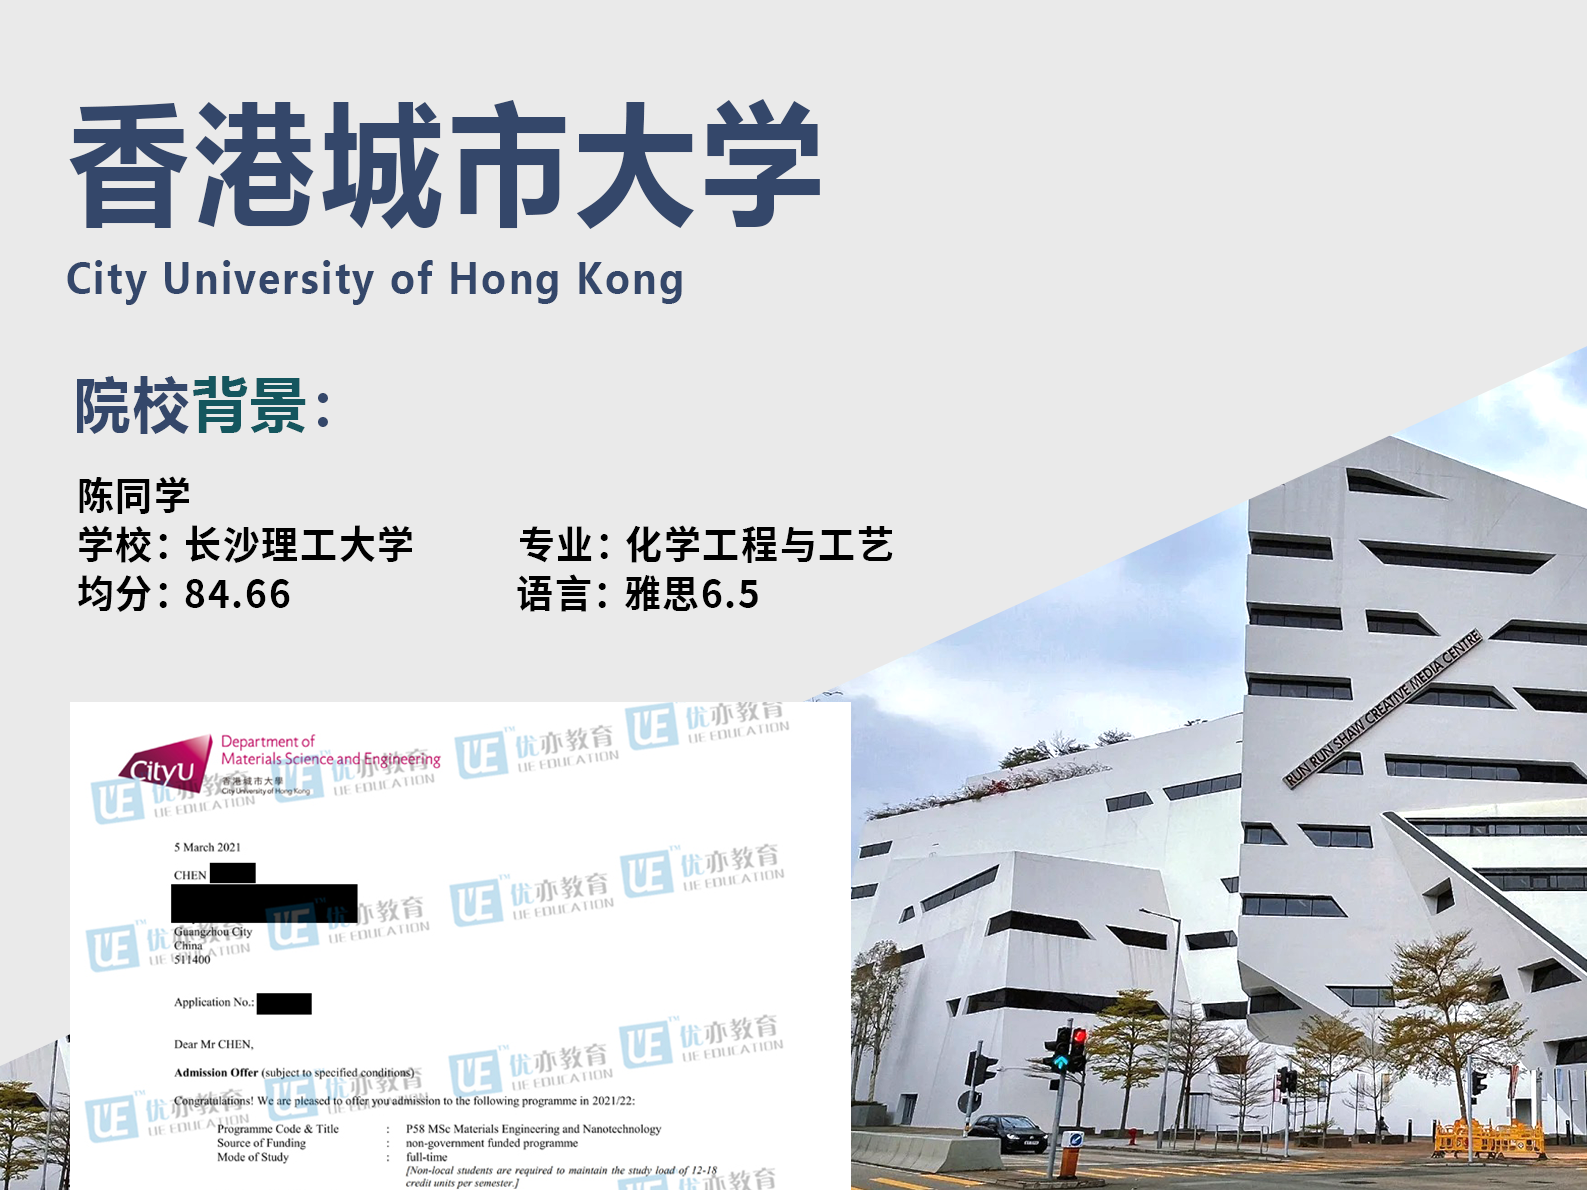 陈同学 香港城市大学、香港理工大学、曼彻斯特大学